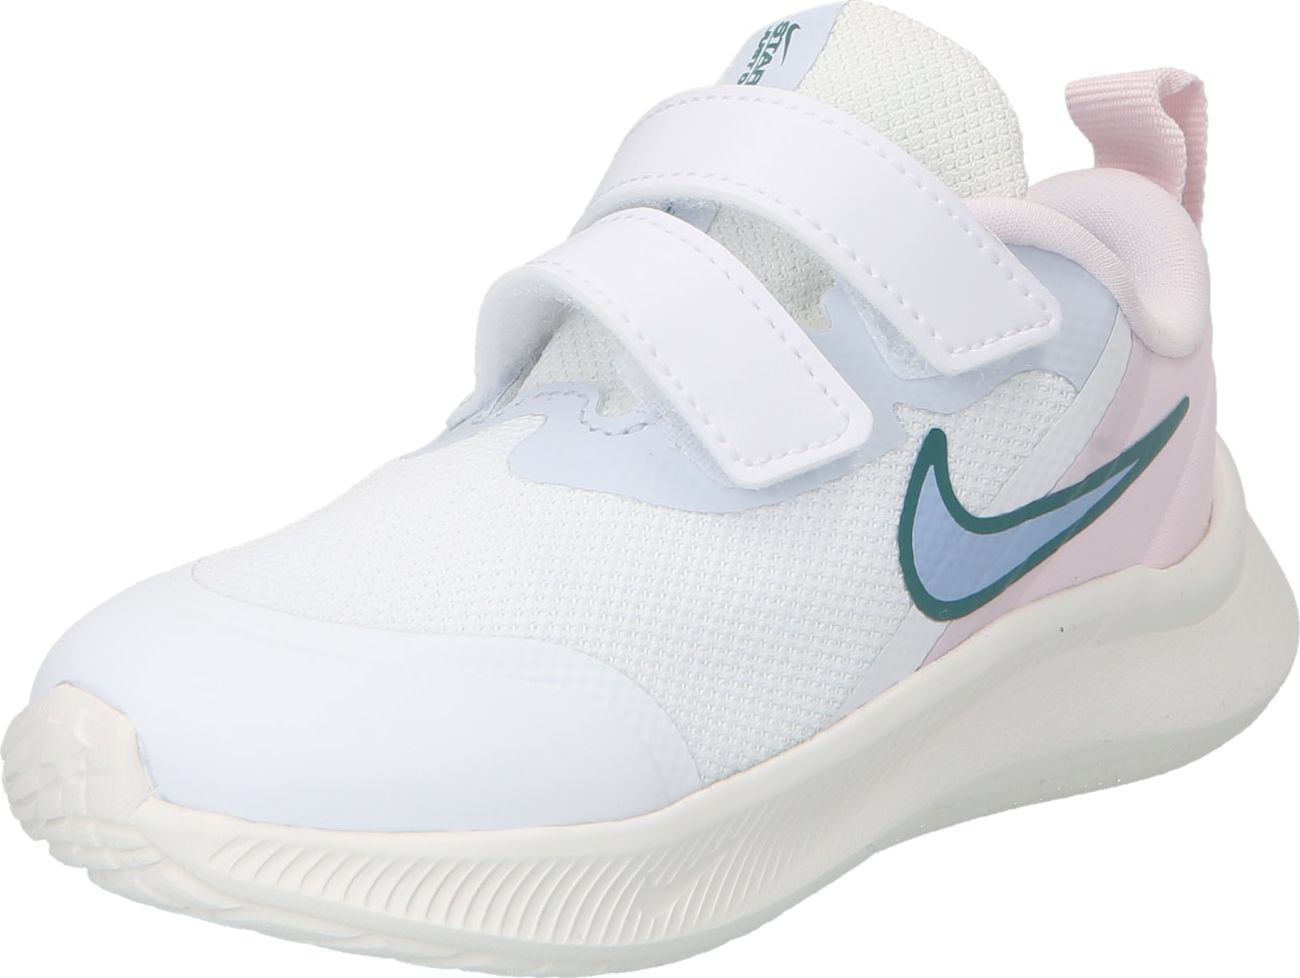 NIKE Sportovní boty marine modrá / světlemodrá / pastelově růžová / bílá